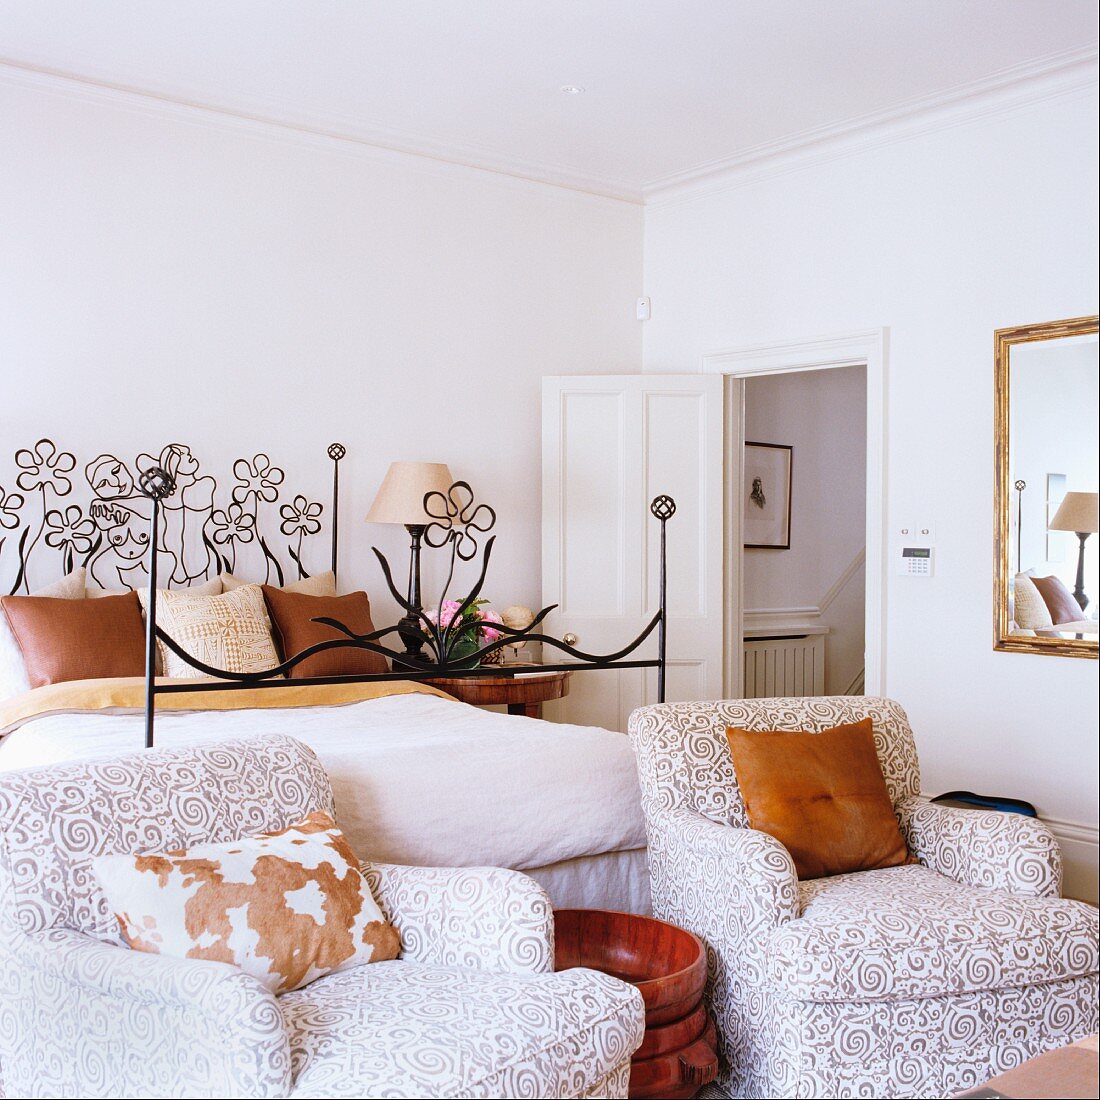 Polstersessel mit Ornamentmuster auf Bezug vor Bett mit Metallgestell und floralen Motiven in schlichtem Schlafzimmer